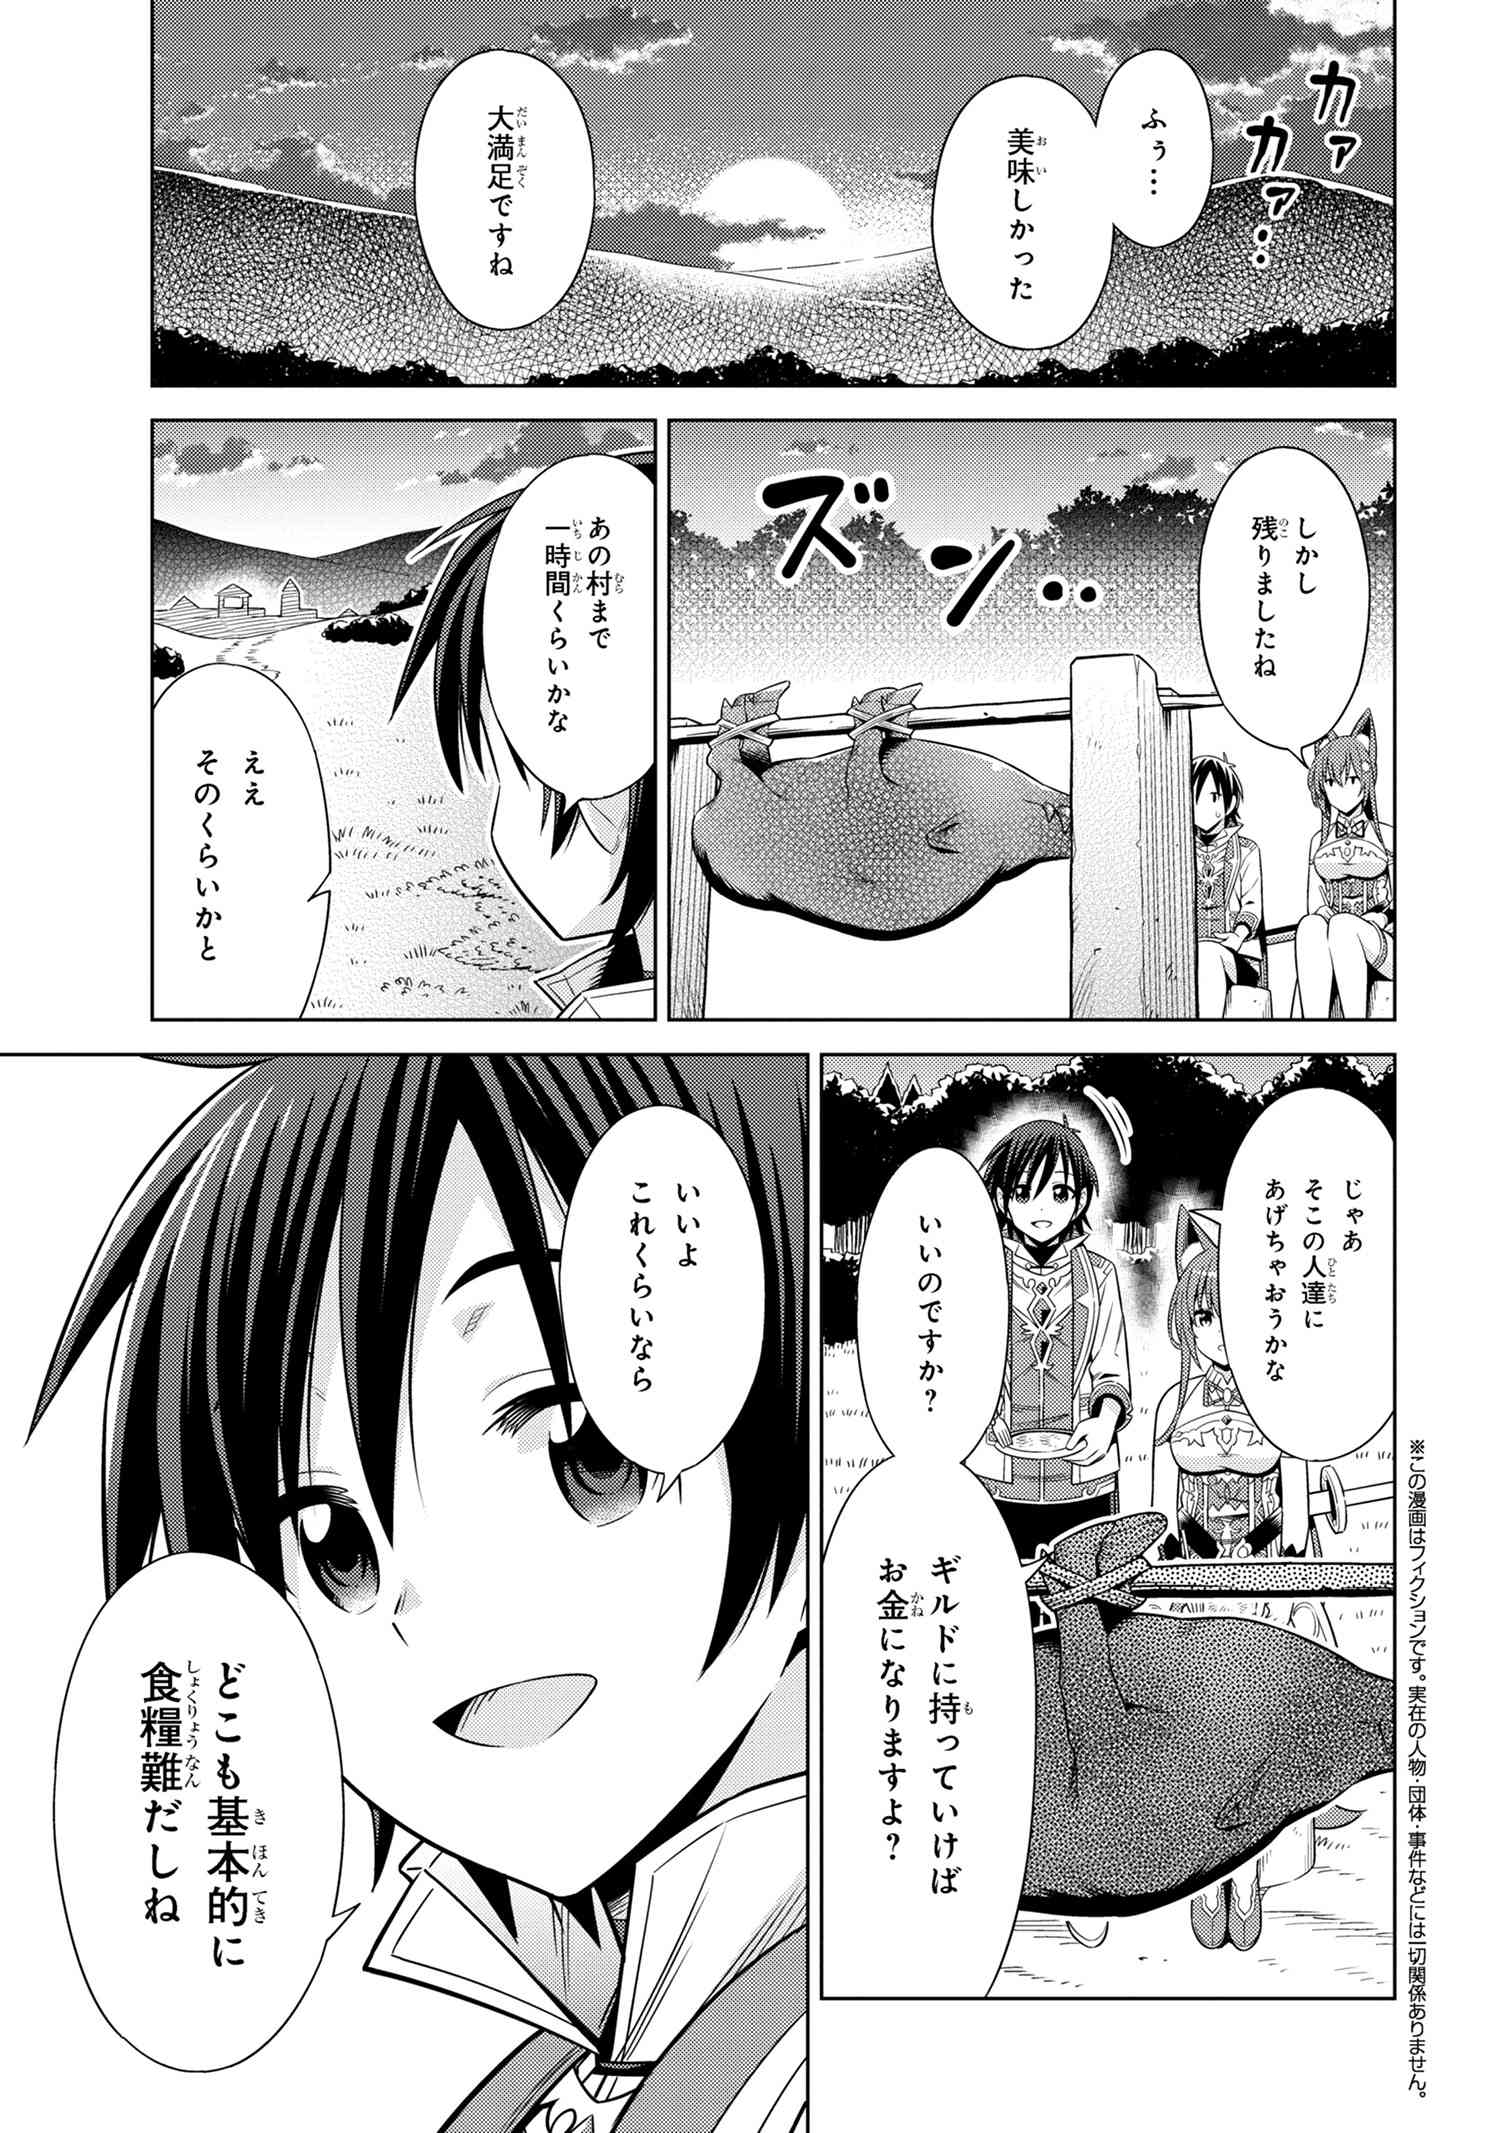 Kokuou de Aru Ani kara Henkyou ni Tsuihousareta kedo Heion ni Kurashitai – Mezase Slow Life  - Chapter 3.2 - Page 1